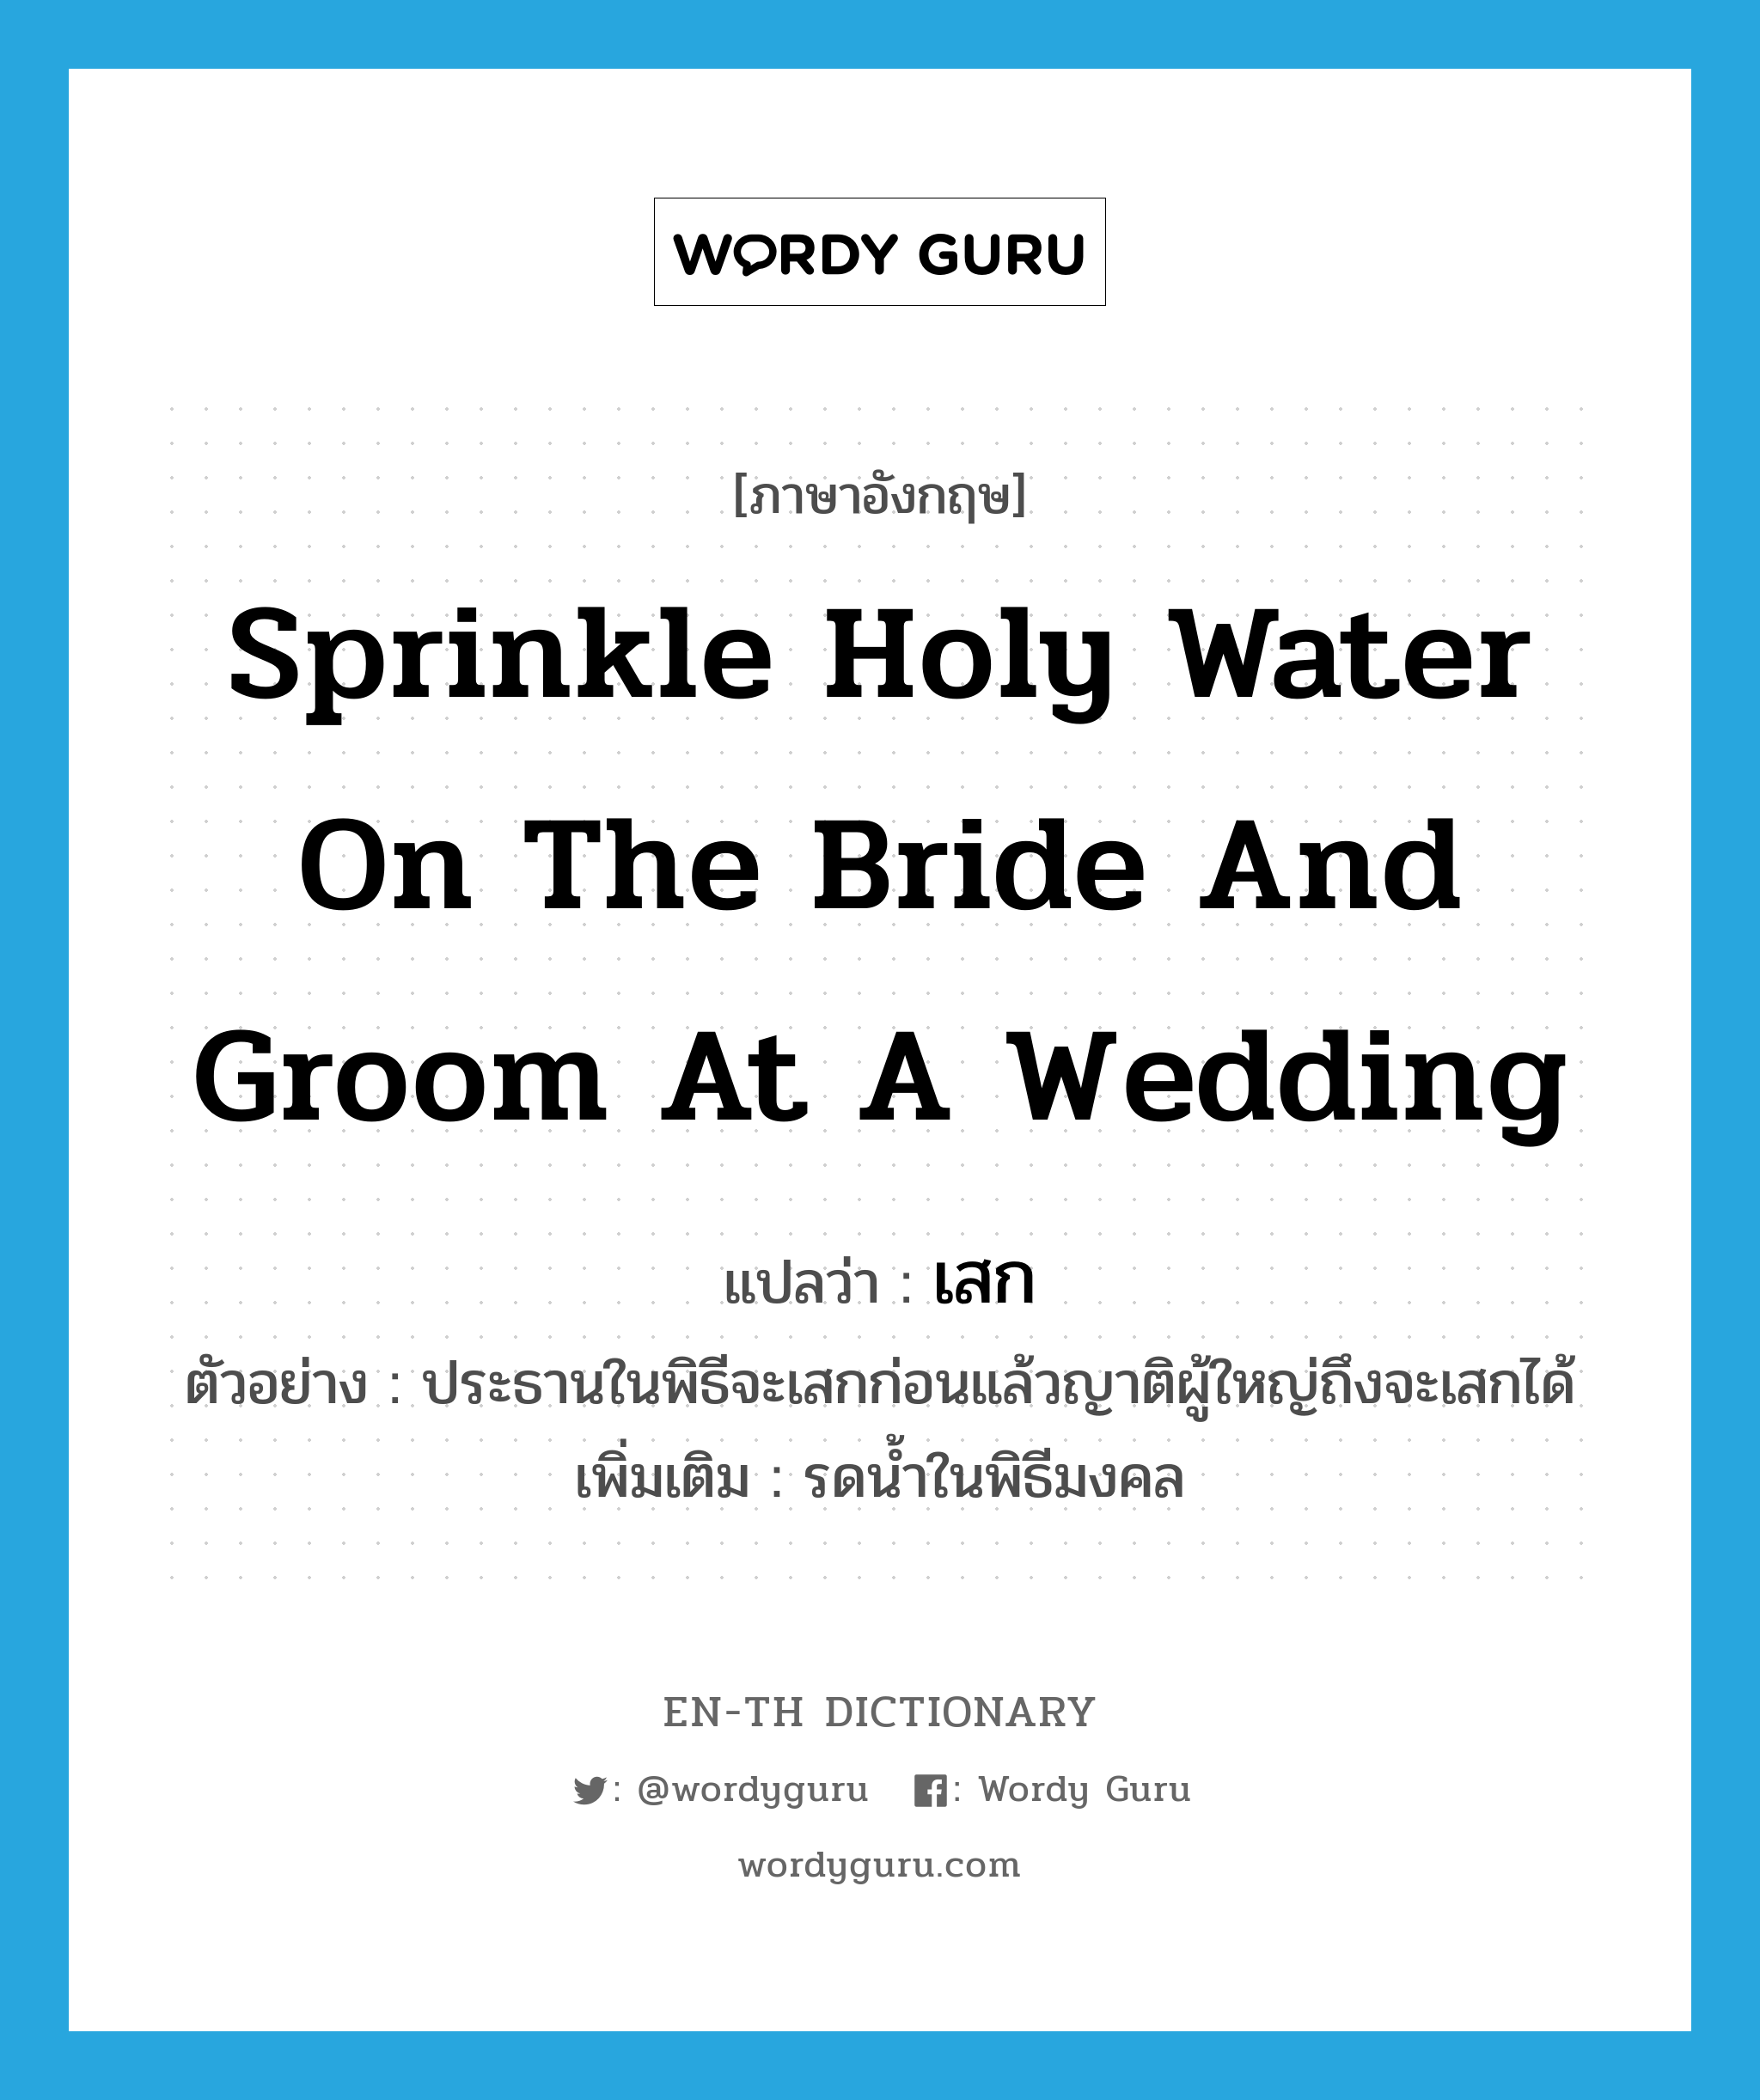 เสก ภาษาอังกฤษ?, คำศัพท์ภาษาอังกฤษ เสก แปลว่า sprinkle holy water on the bride and groom at a wedding ประเภท V ตัวอย่าง ประธานในพิธีจะเสกก่อนแล้วญาติผู้ใหญ่ถึงจะเสกได้ เพิ่มเติม รดน้ำในพิธีมงคล หมวด V